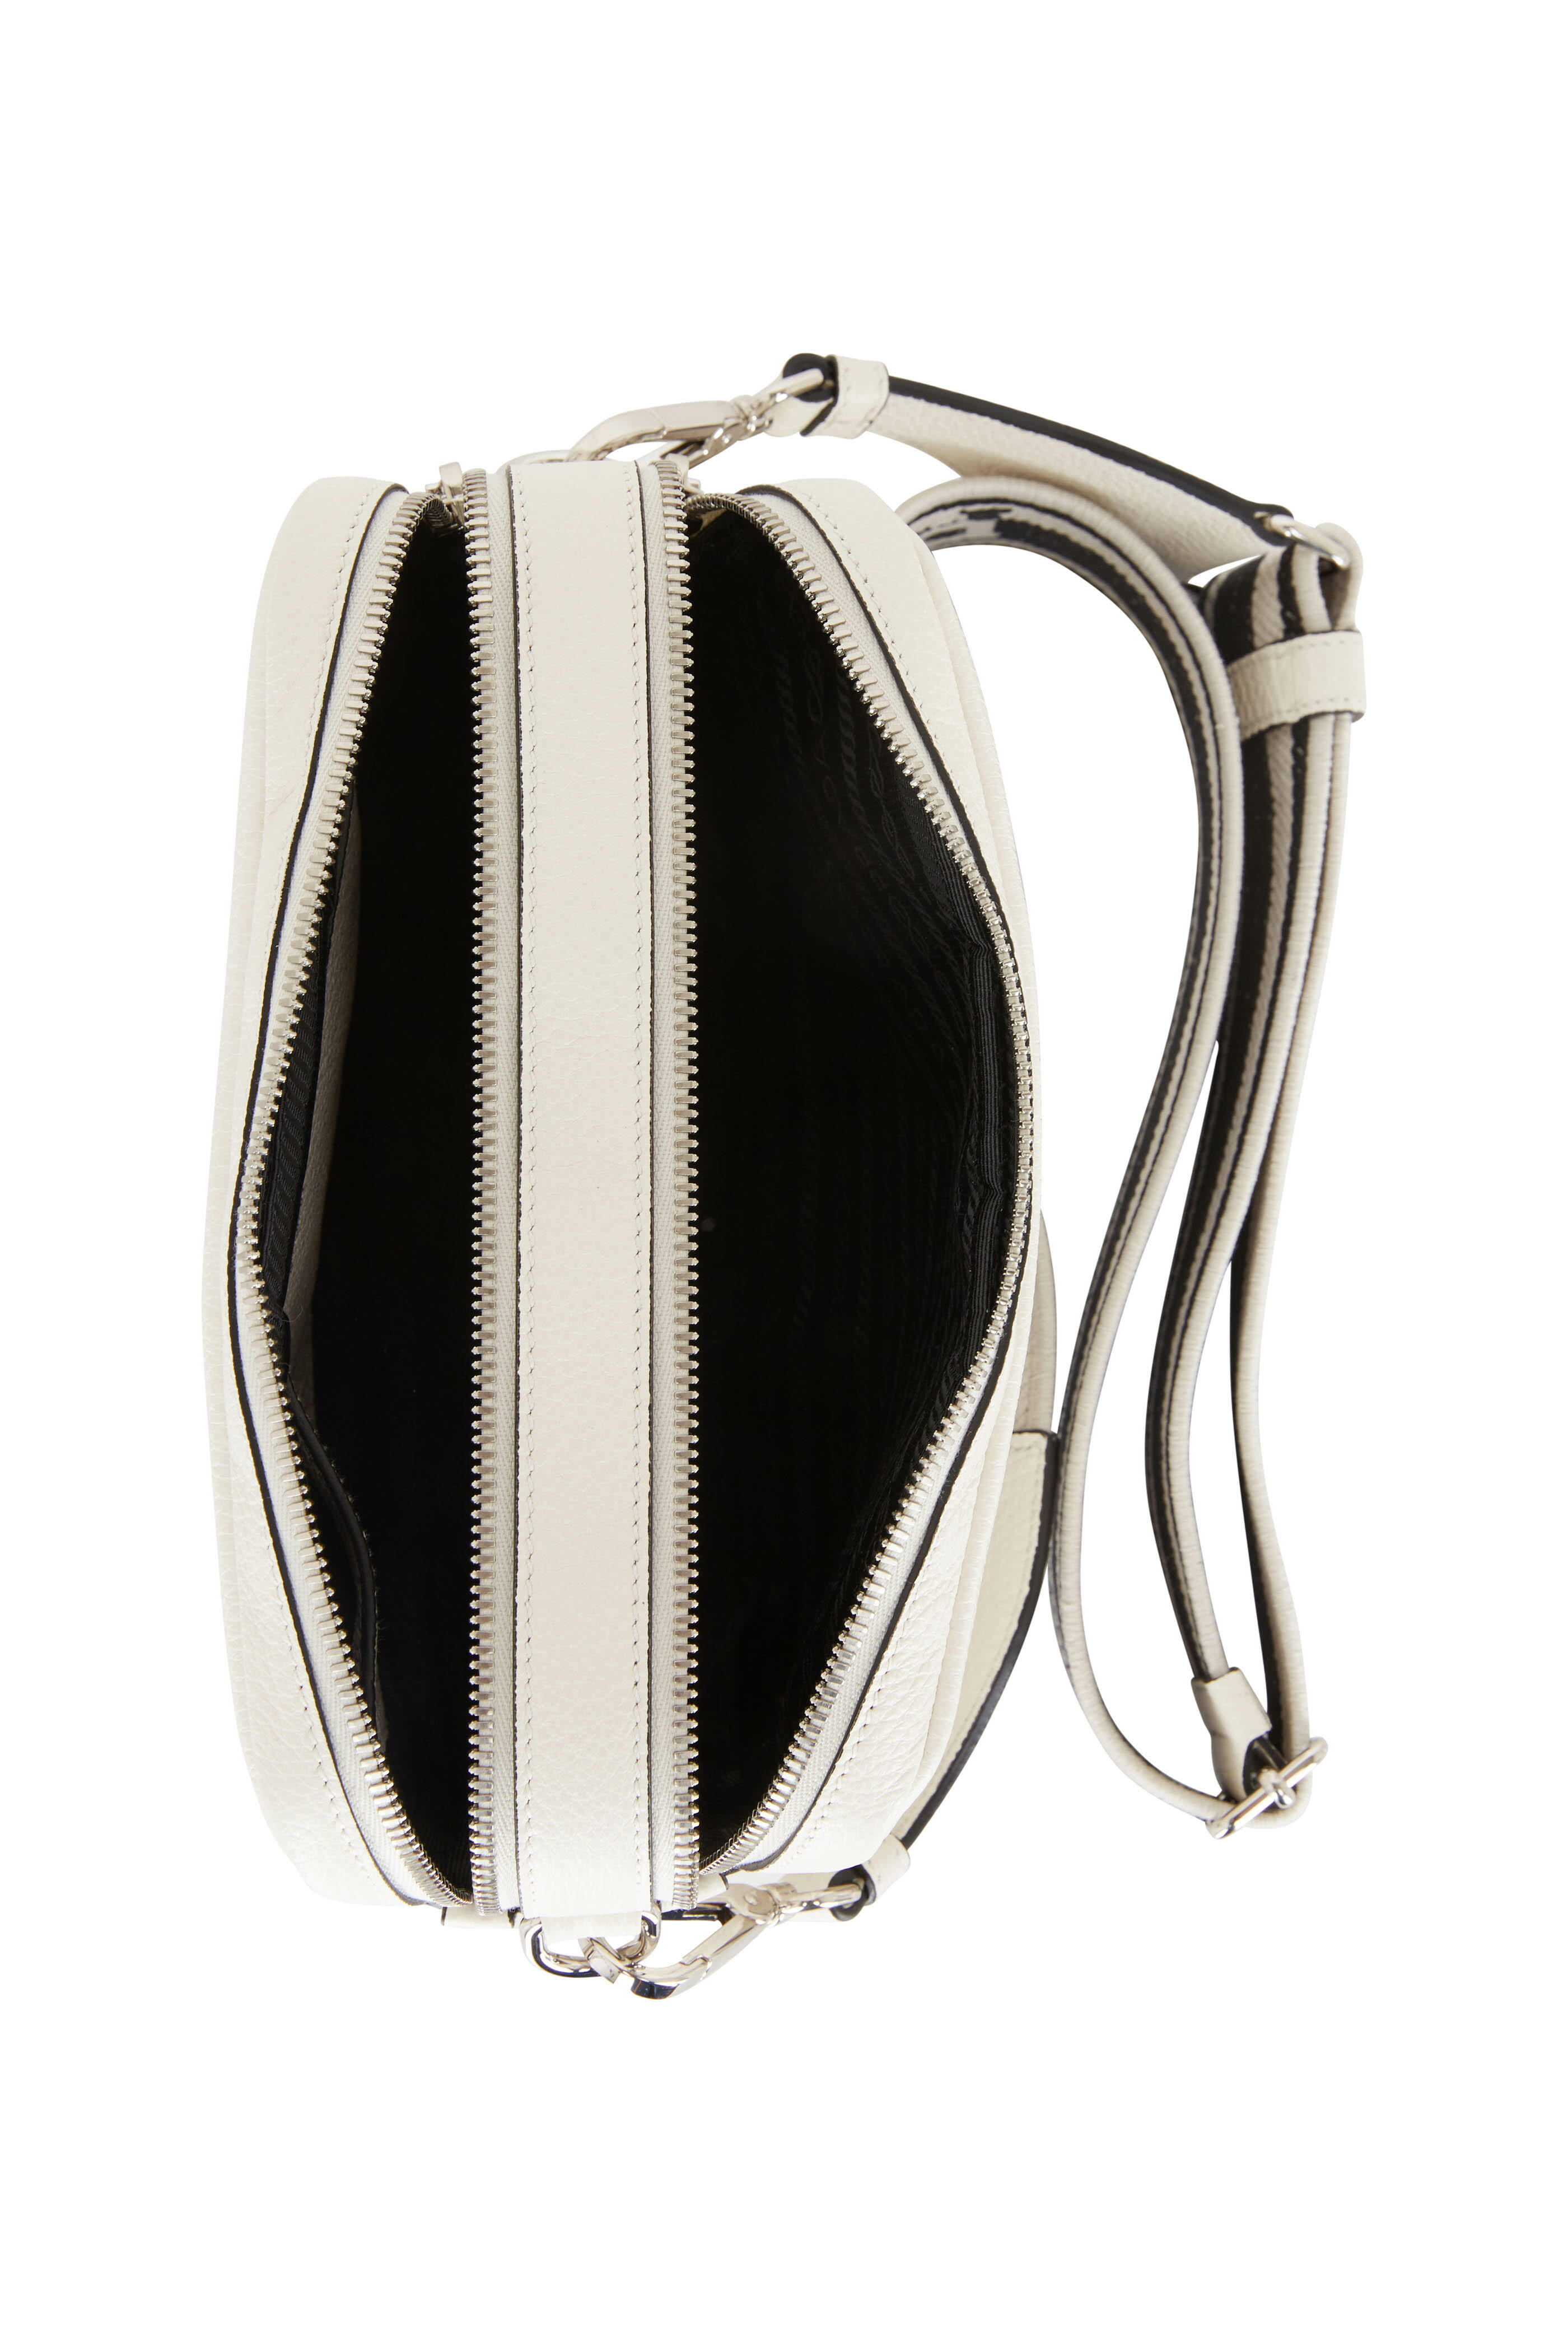 E Fashion Trends - Prada Double Zipper Camera Bag